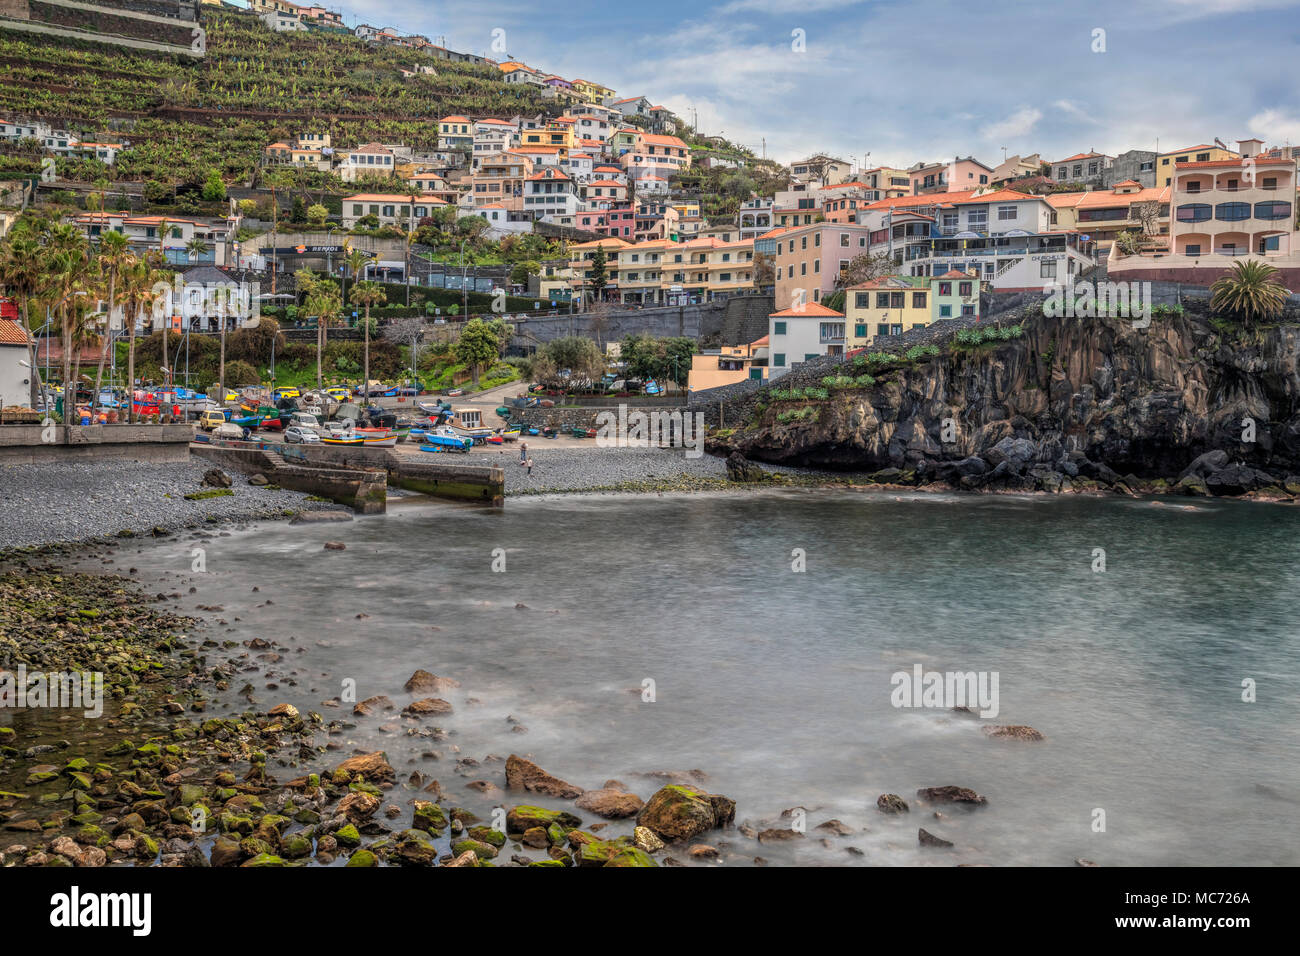 Camara de Lobos, Madeira, Portugal, Europe Stock Photo